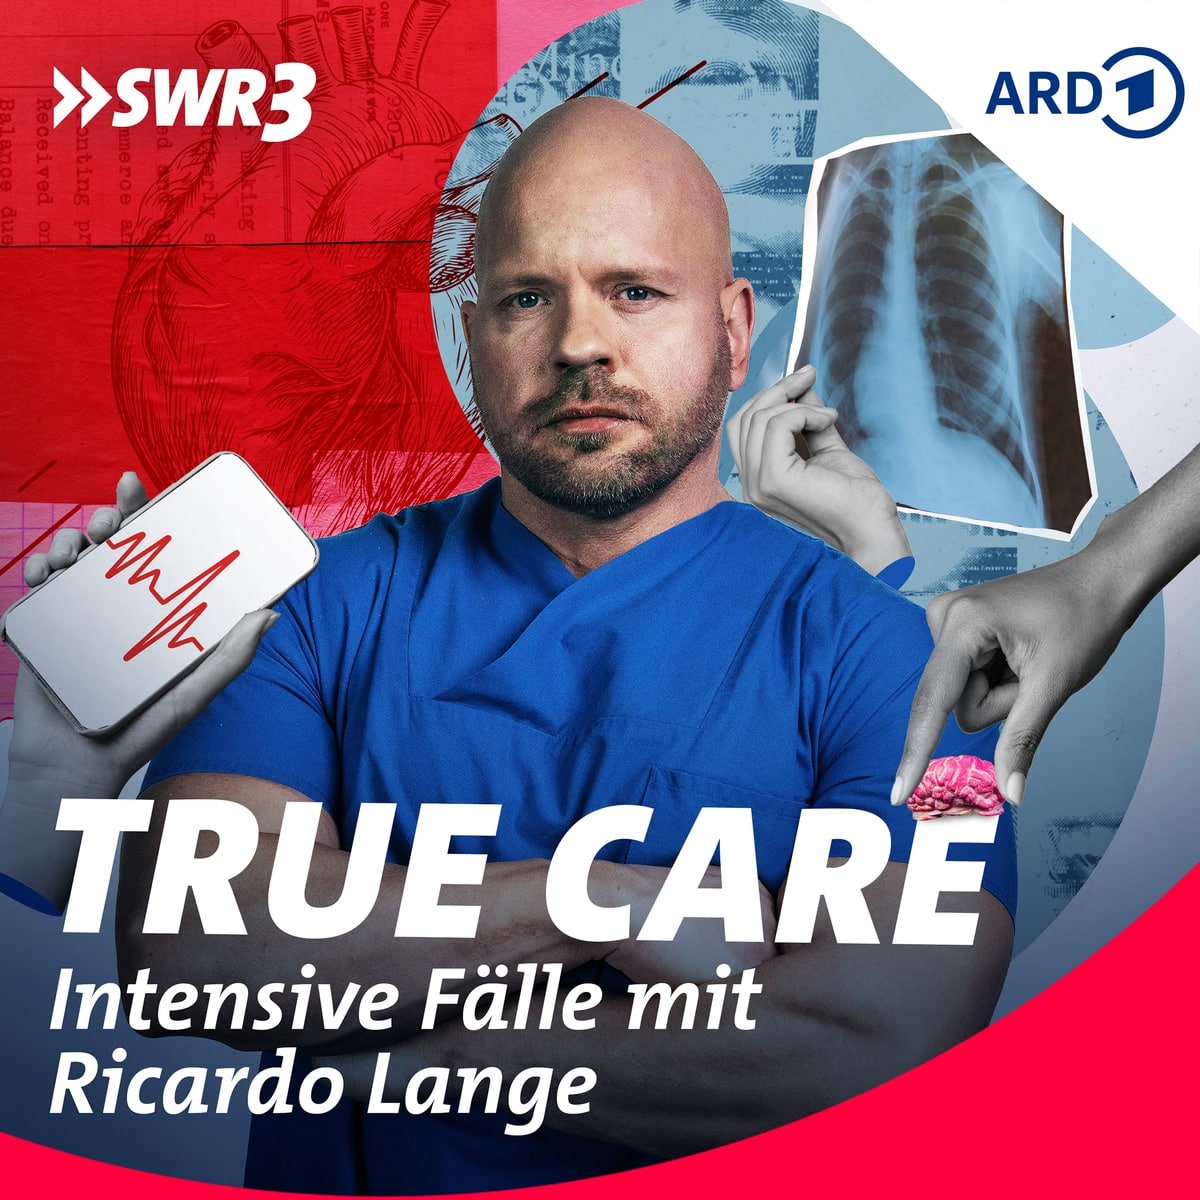 SWR3 Podcast “True Care” erzählt Gesundheitsschicksale und ihre Heldengeschichten